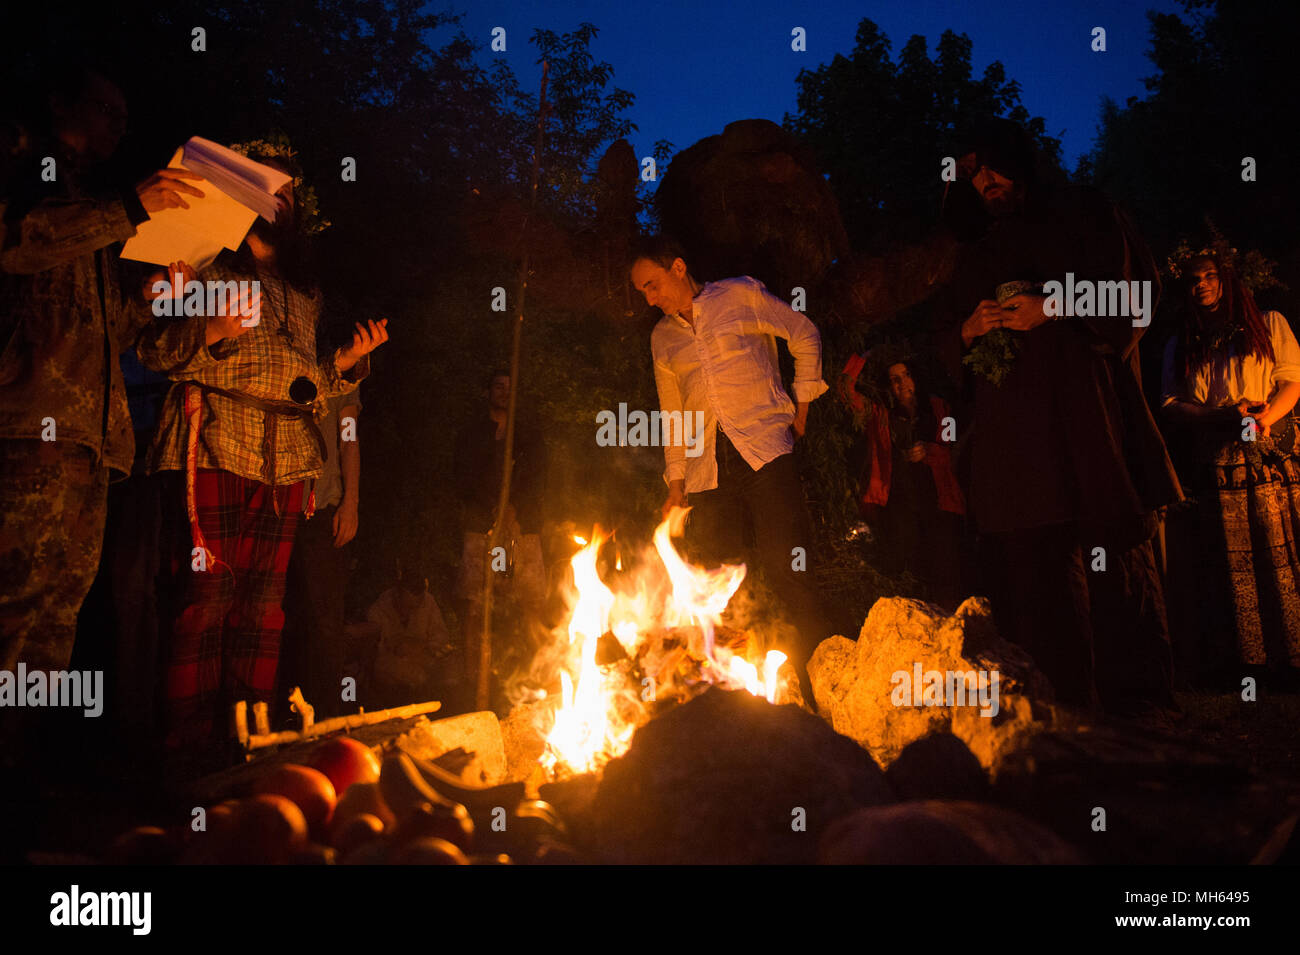 Los participantes orar durante la fiesta de Beltane Fire junto a Krakau montículo en Cracovia. El Beltane Fire Festival es un evento anual de artes participativa celebrada en la noche del 30 de abril para celebrar el comienzo del verano. Foto de stock